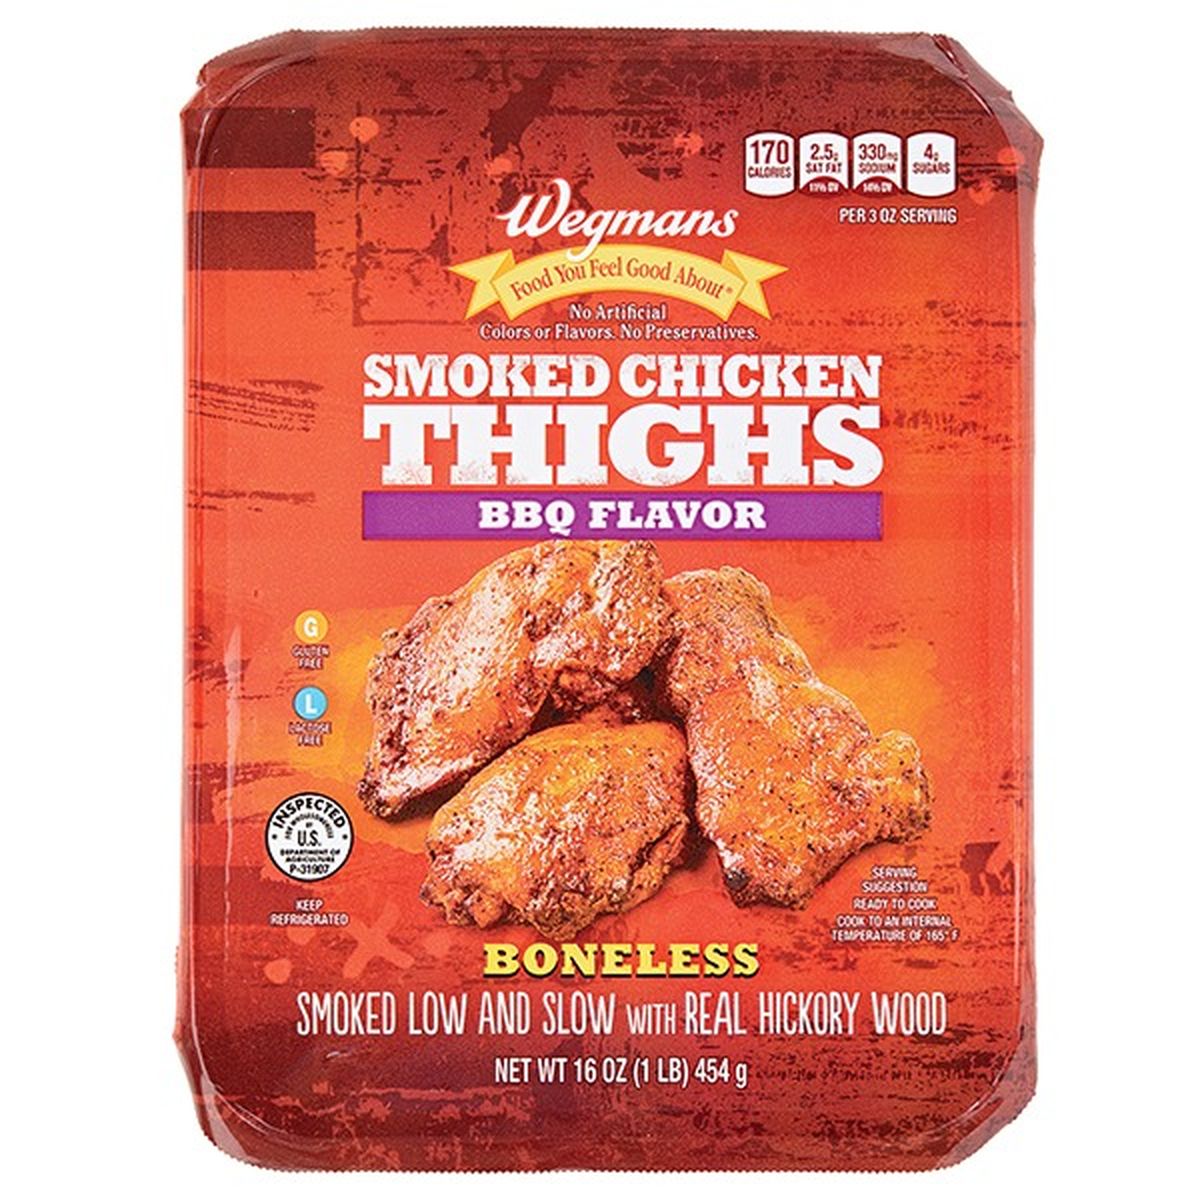 Calories in Wegmans Smoked Chicken Thighs BBQ Flavor